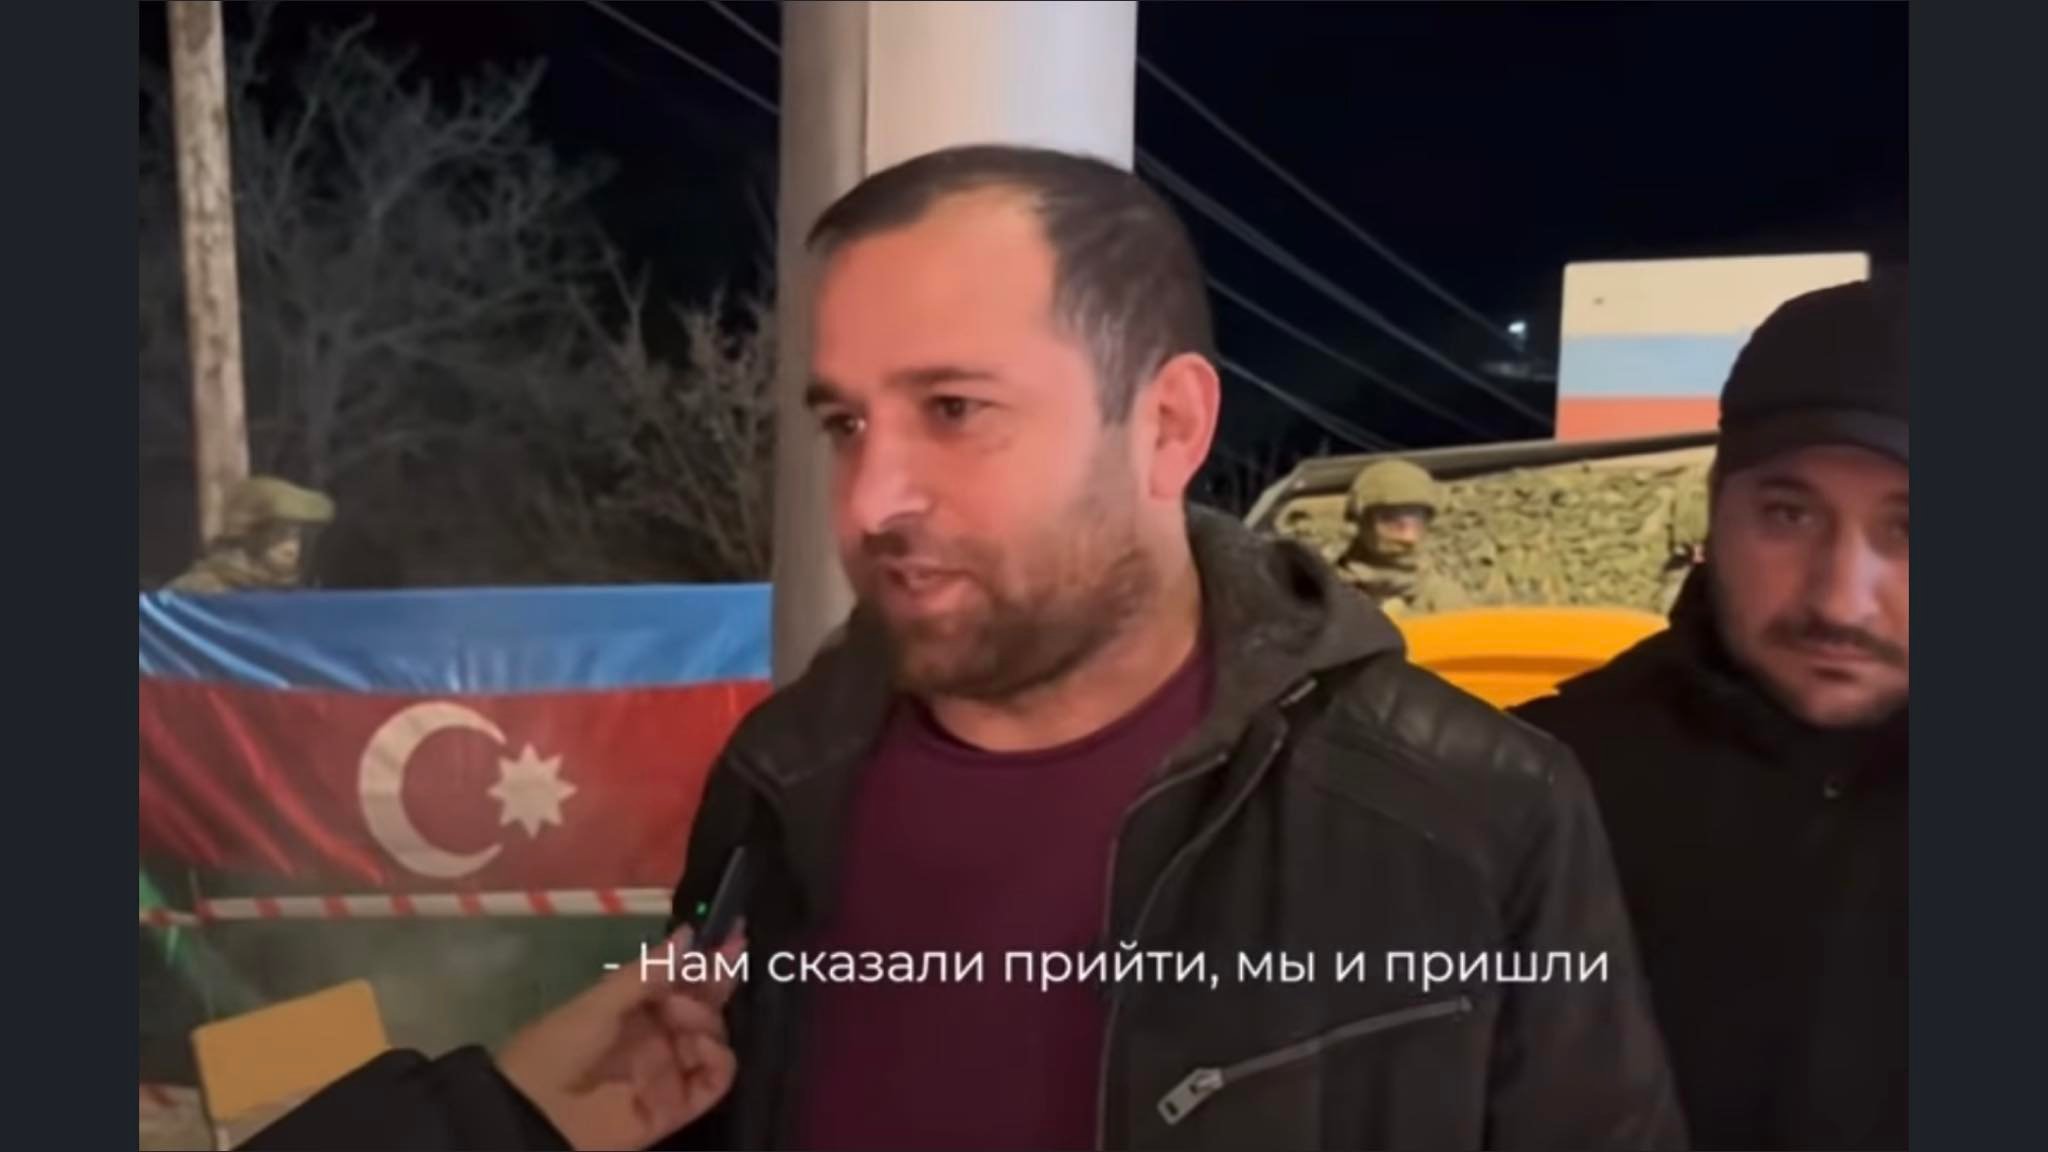 Տեսանյութ. Ադրբեջանցի «բնապահպանները» իրենք էլ տեղյակ չեն, թե ինչու են փակել Լաչինի միջանցքը.«Մեզ ասացին գնացեք, մենք էլ գնացինք»